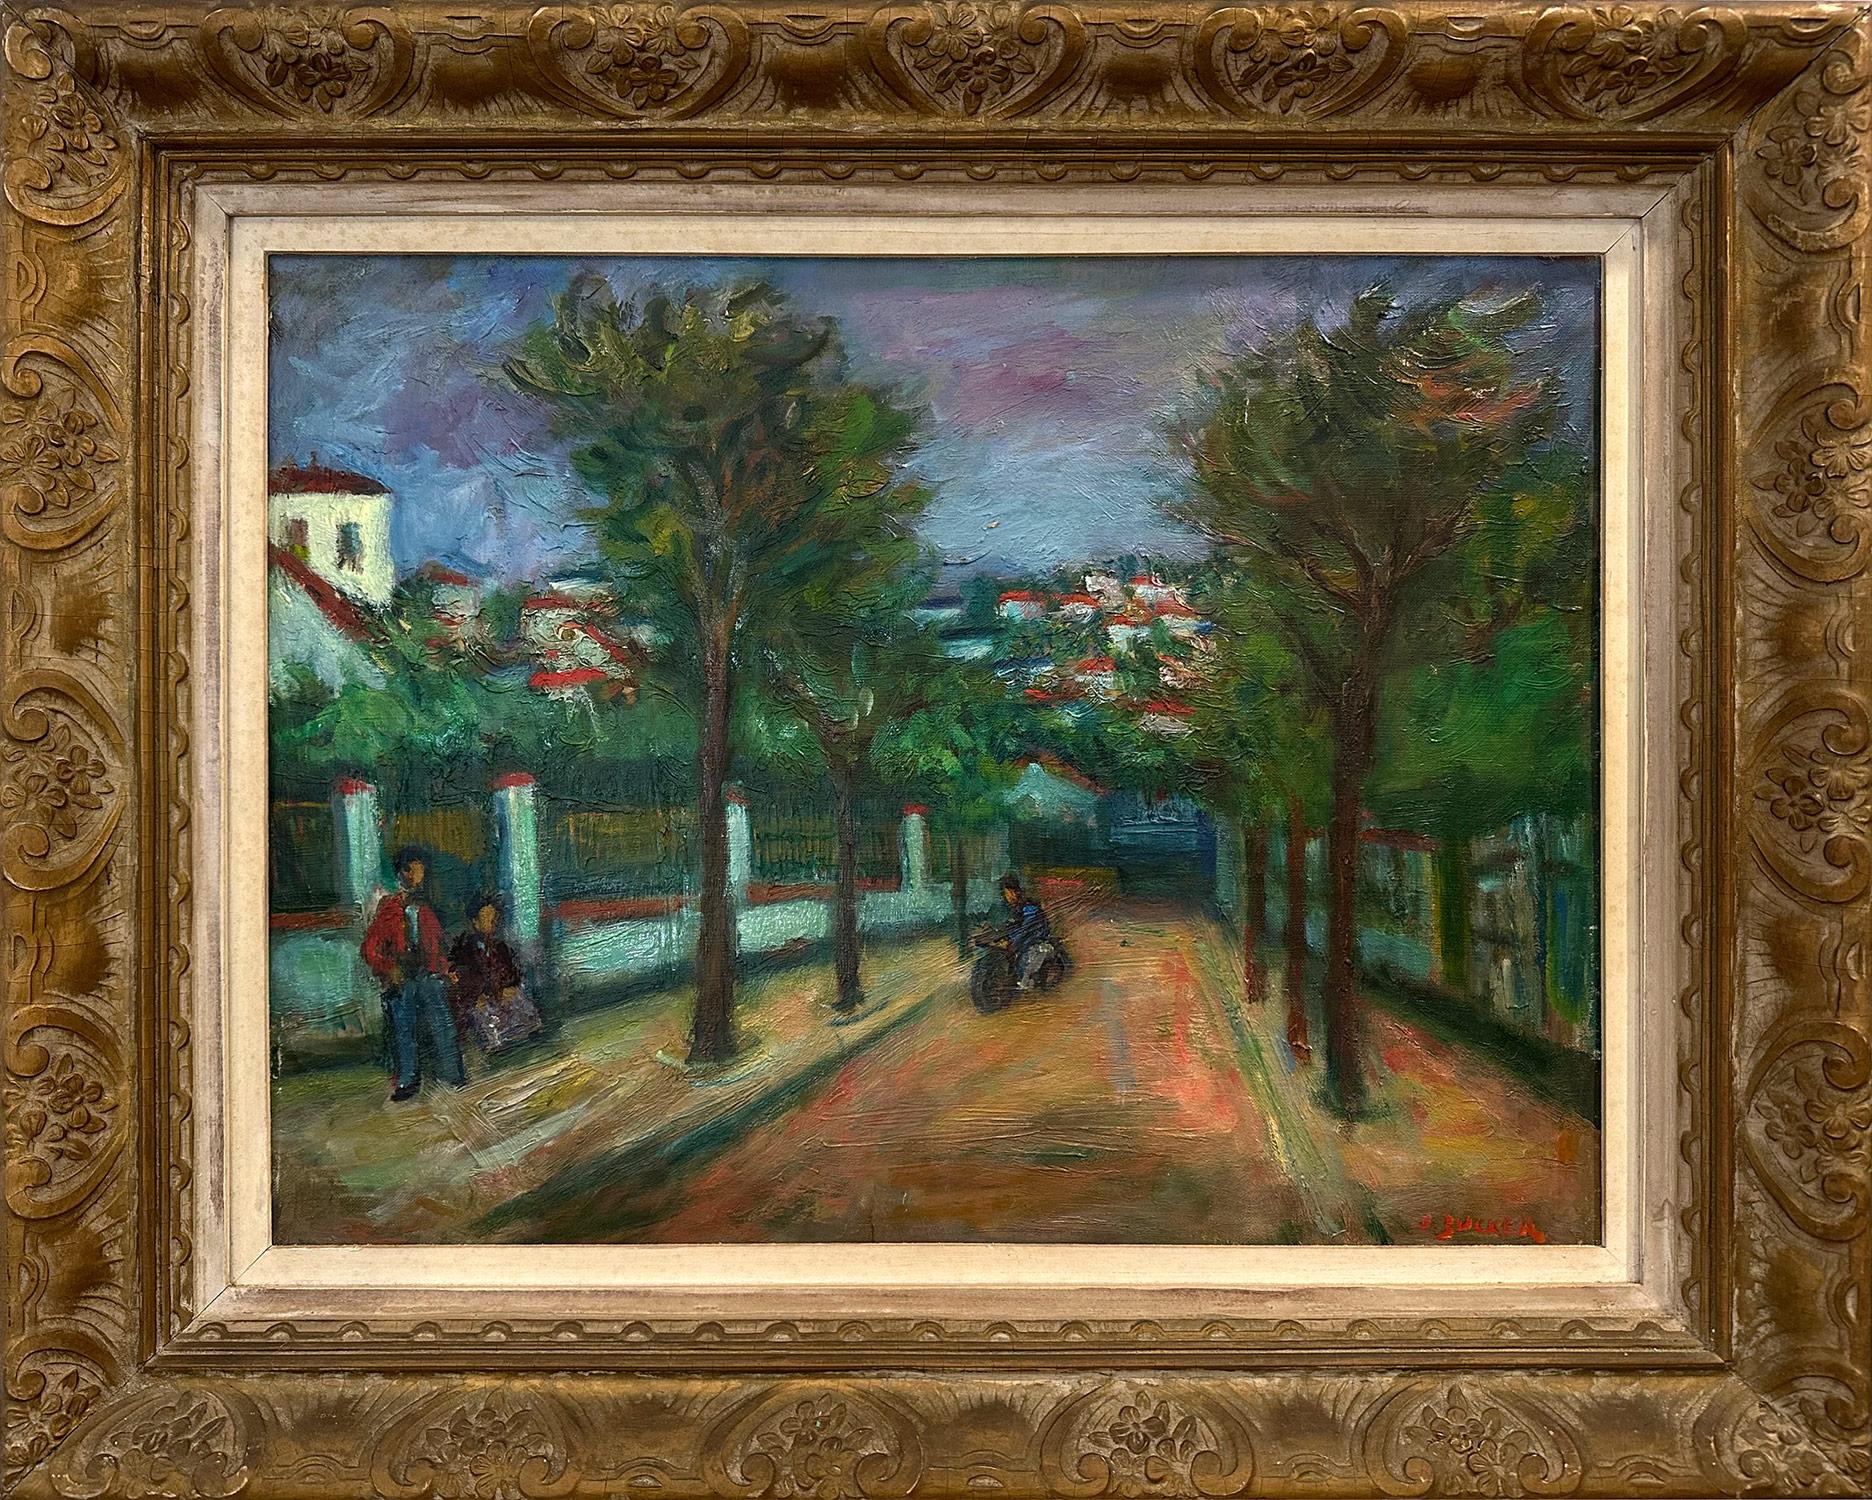 Landscape Painting Jacques Zucker - "Riding Through Town", peinture à l'huile sur toile post-impressionniste d'un village français